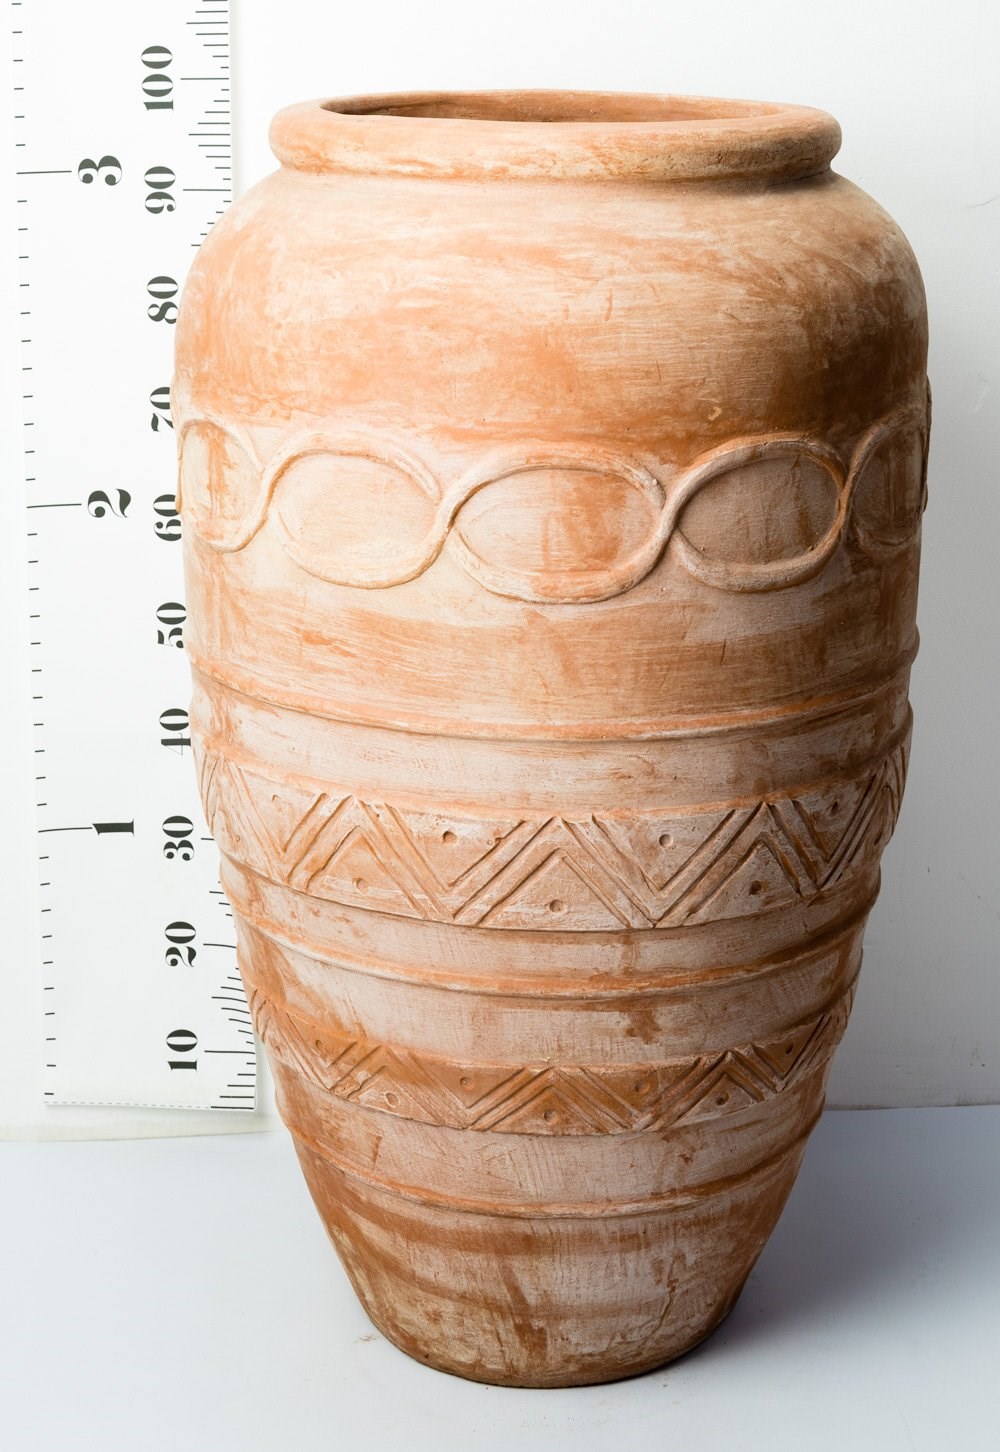 H100cm Terracotta Tall Vase Planter